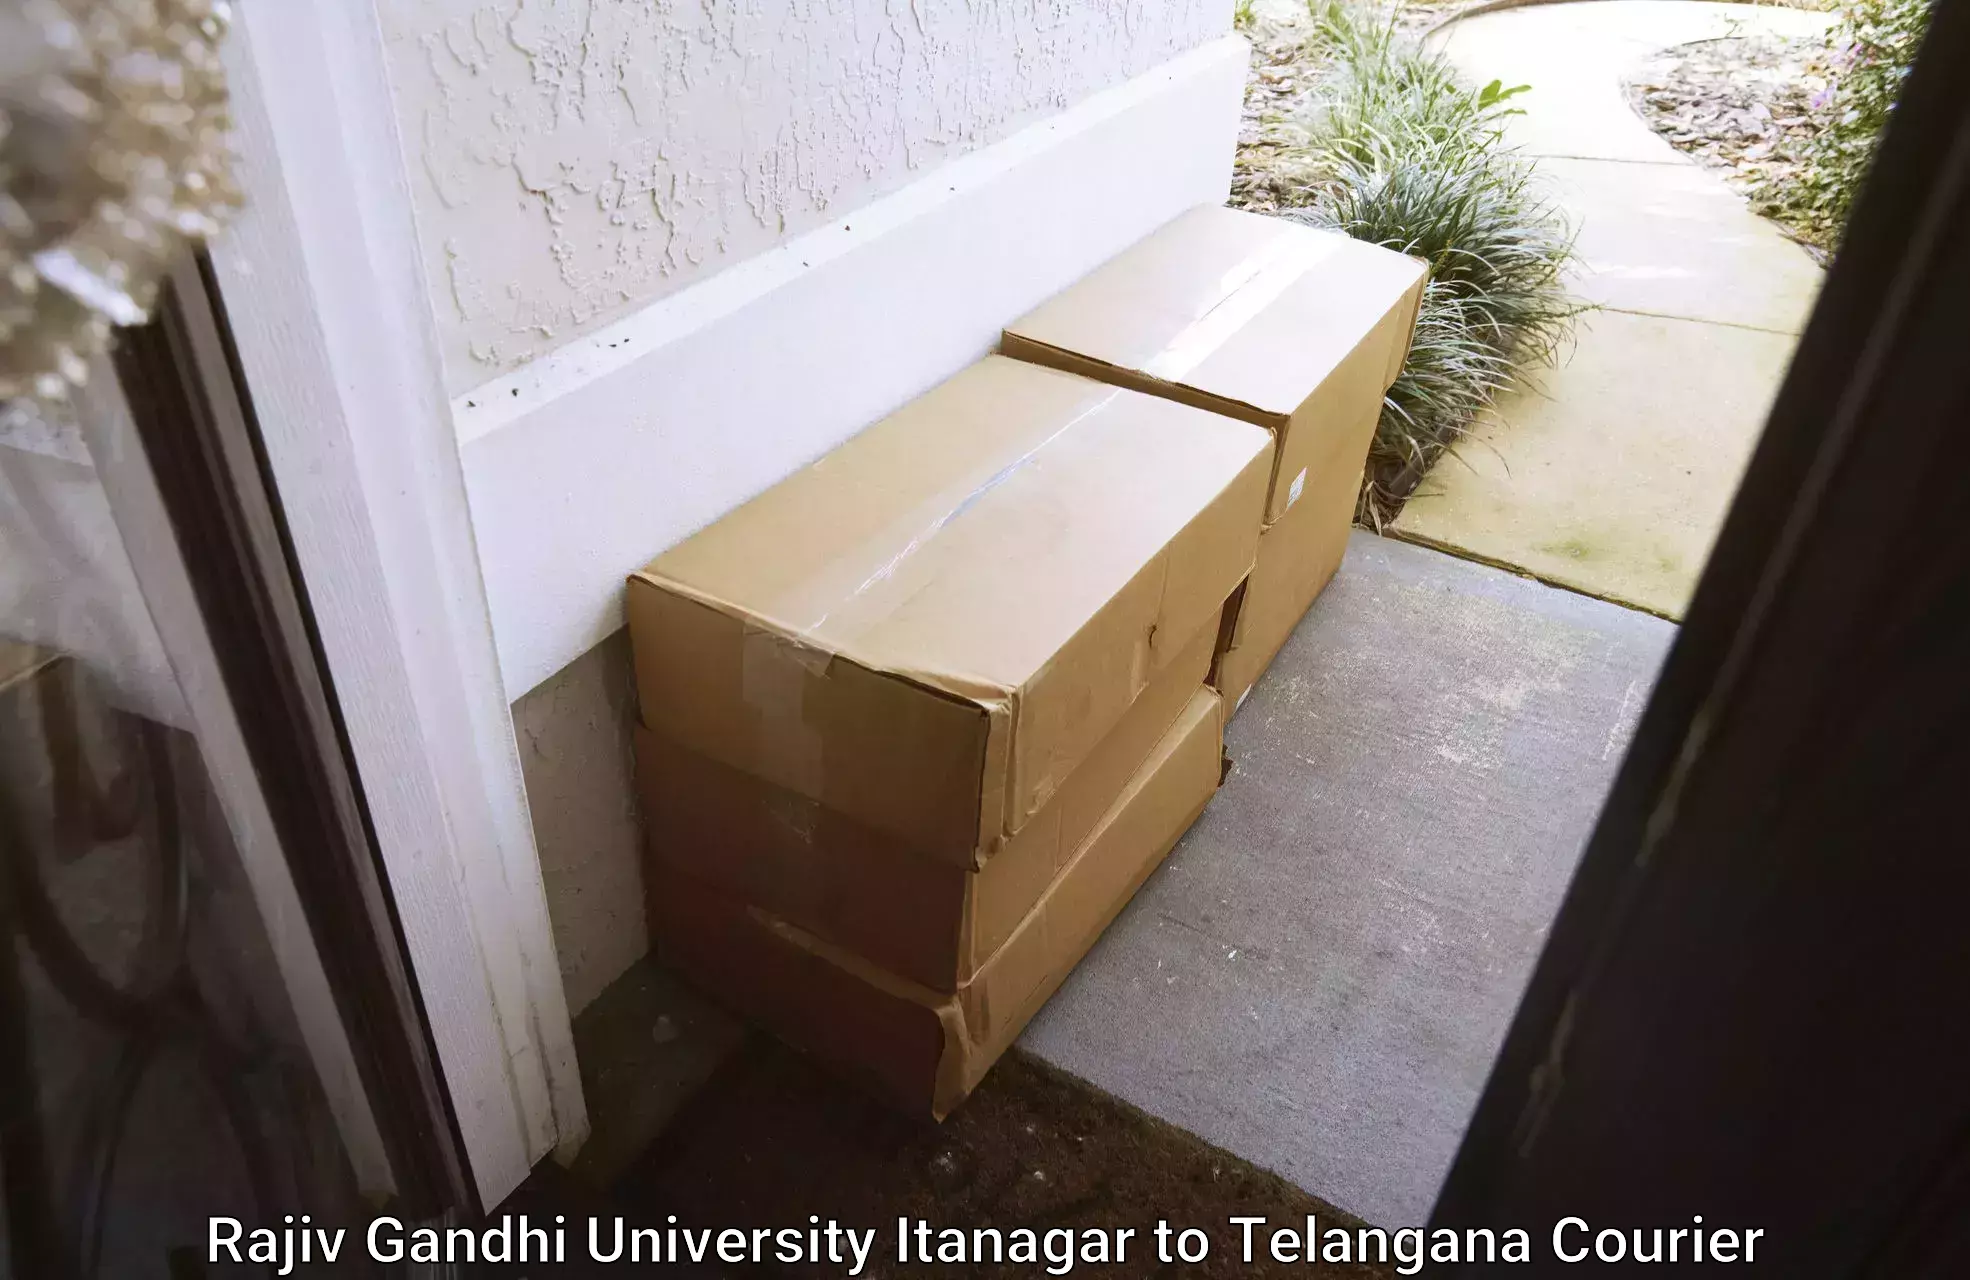 Lightweight courier Rajiv Gandhi University Itanagar to Babasagar